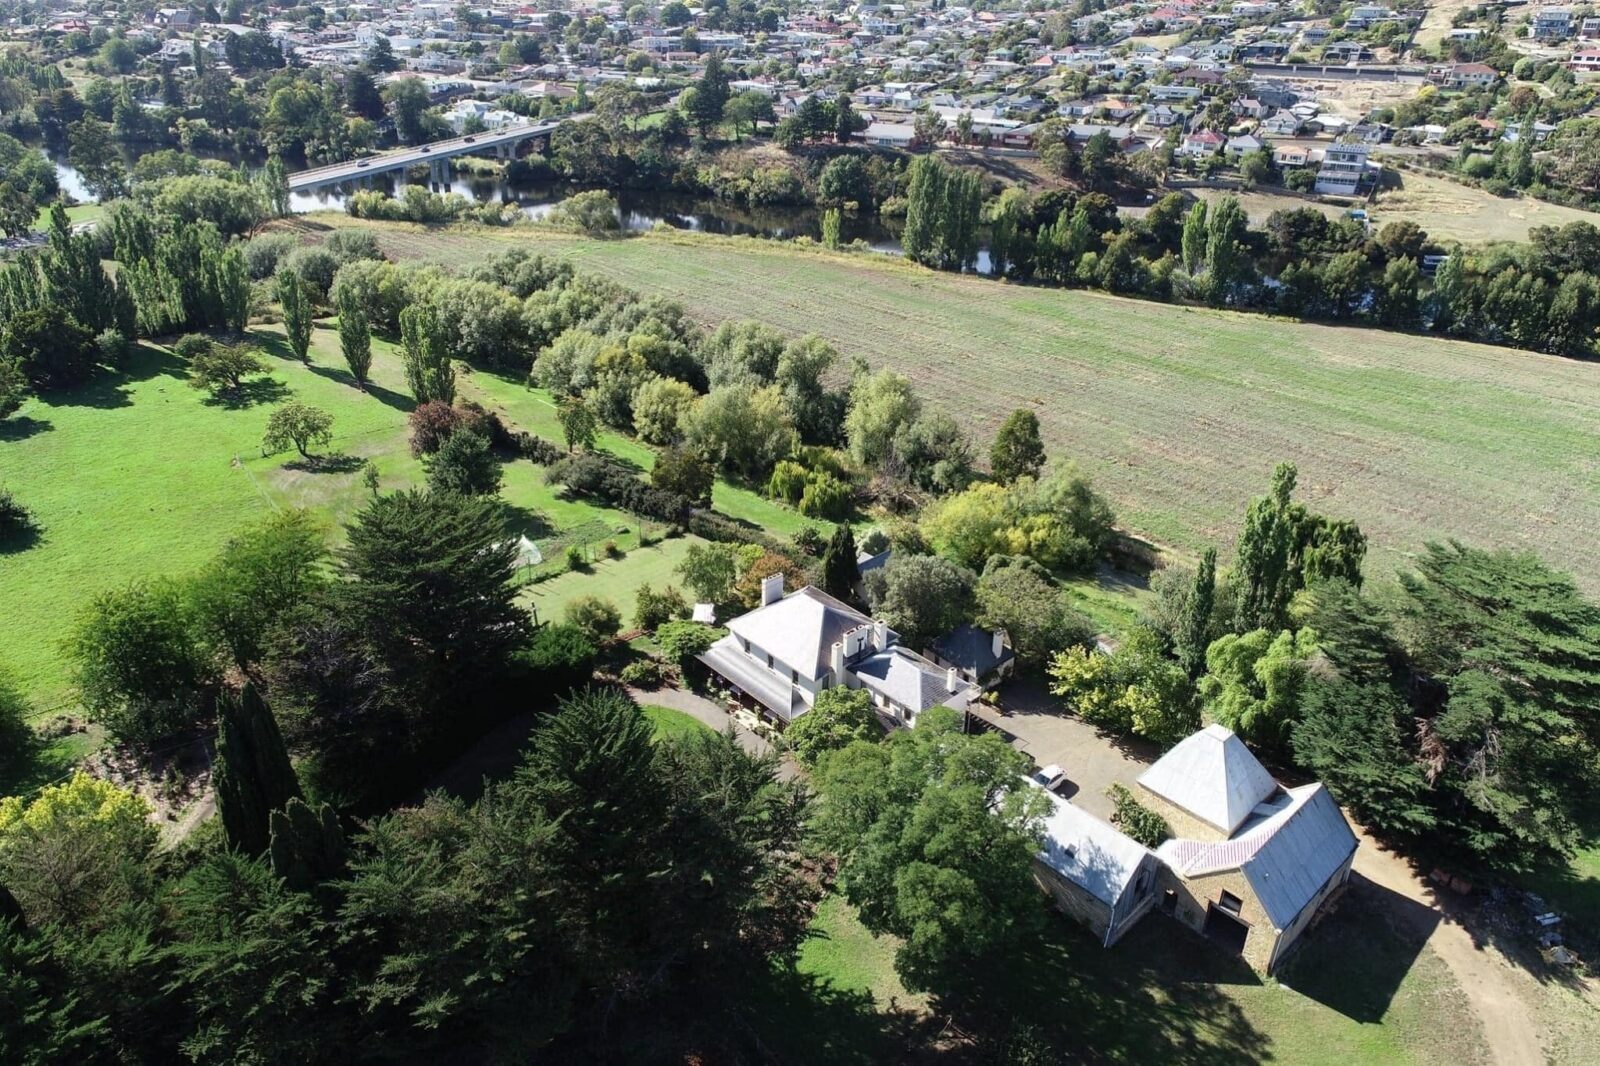 aerial photograph of Glen Derwent property